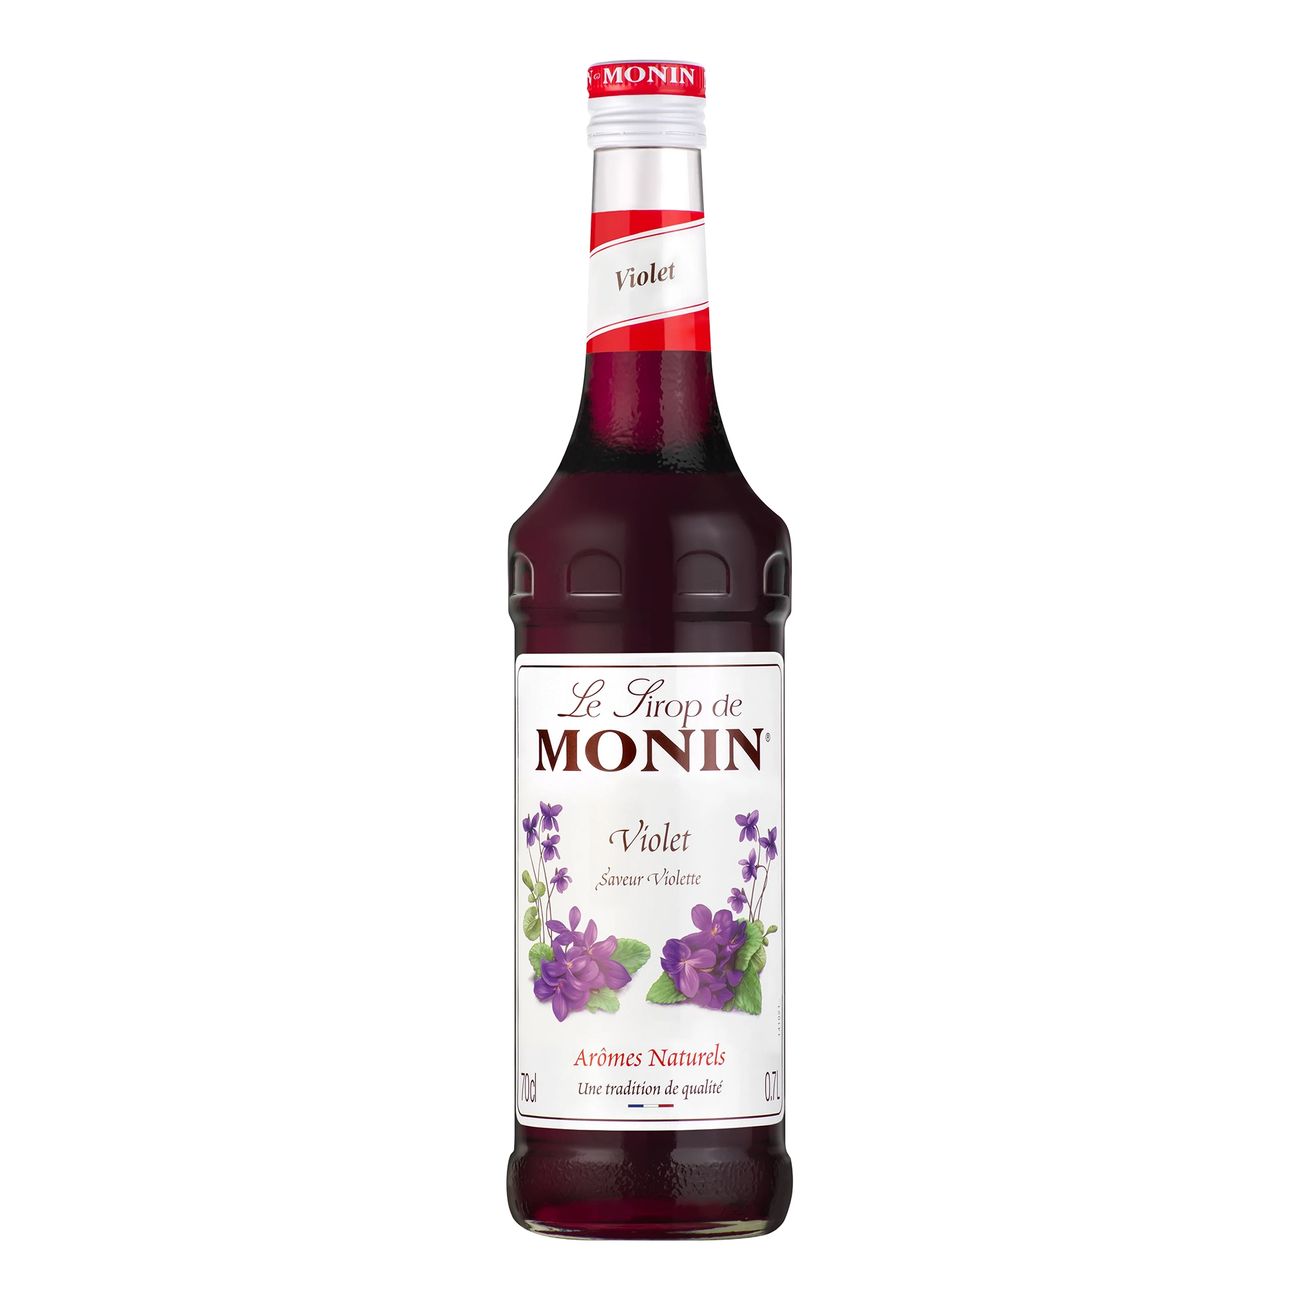 monin-violet-syrup-71351-4